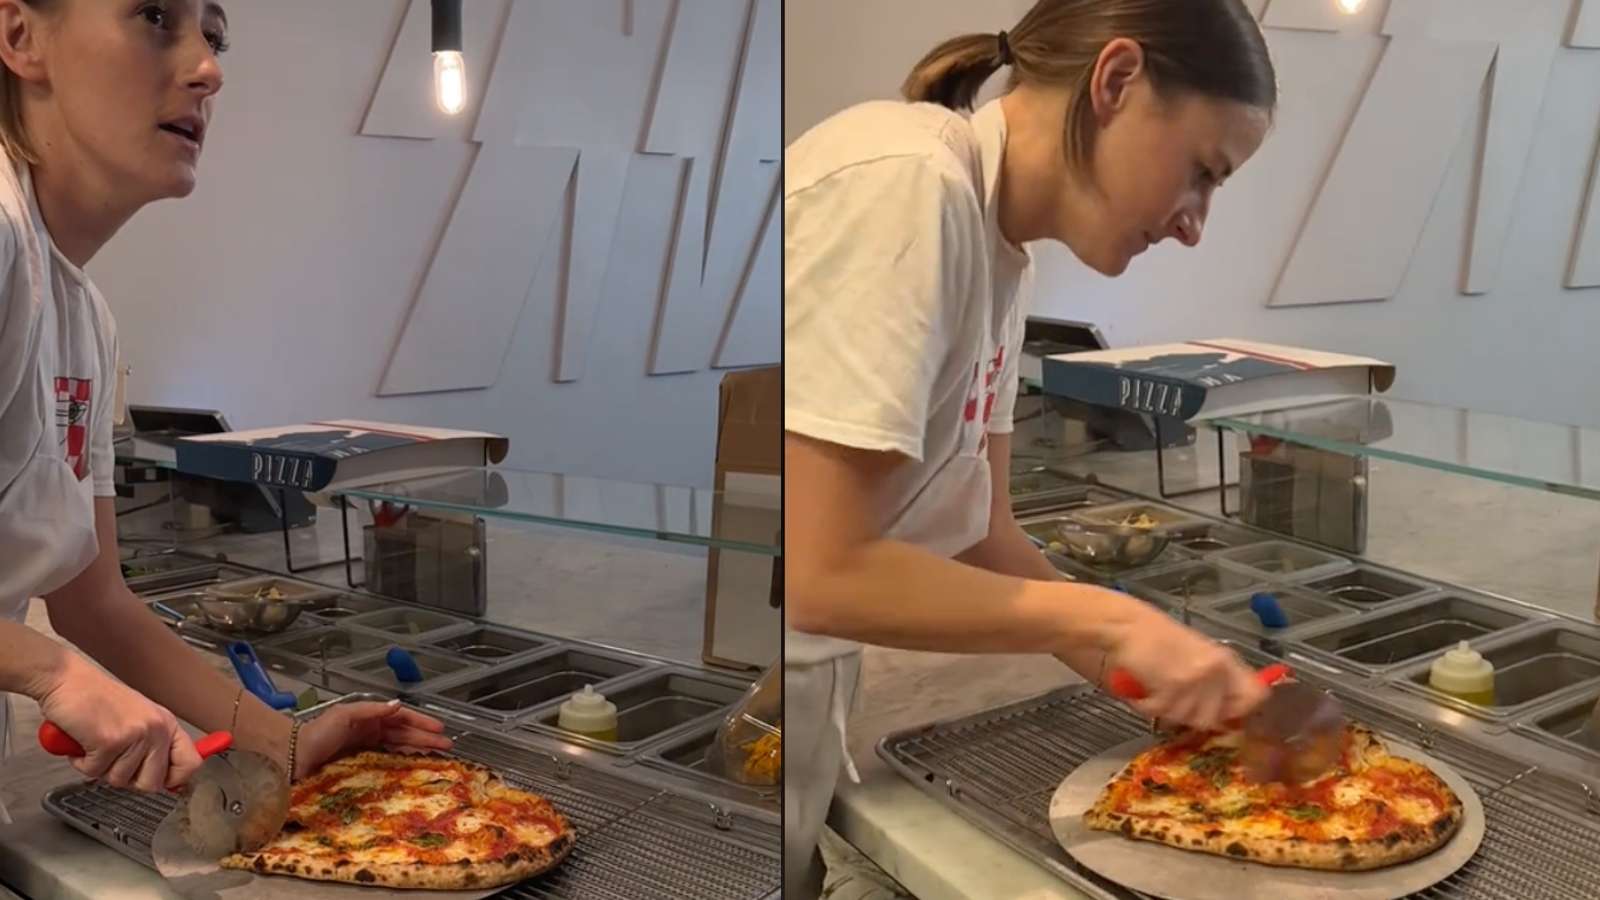 Woman destroys pizza